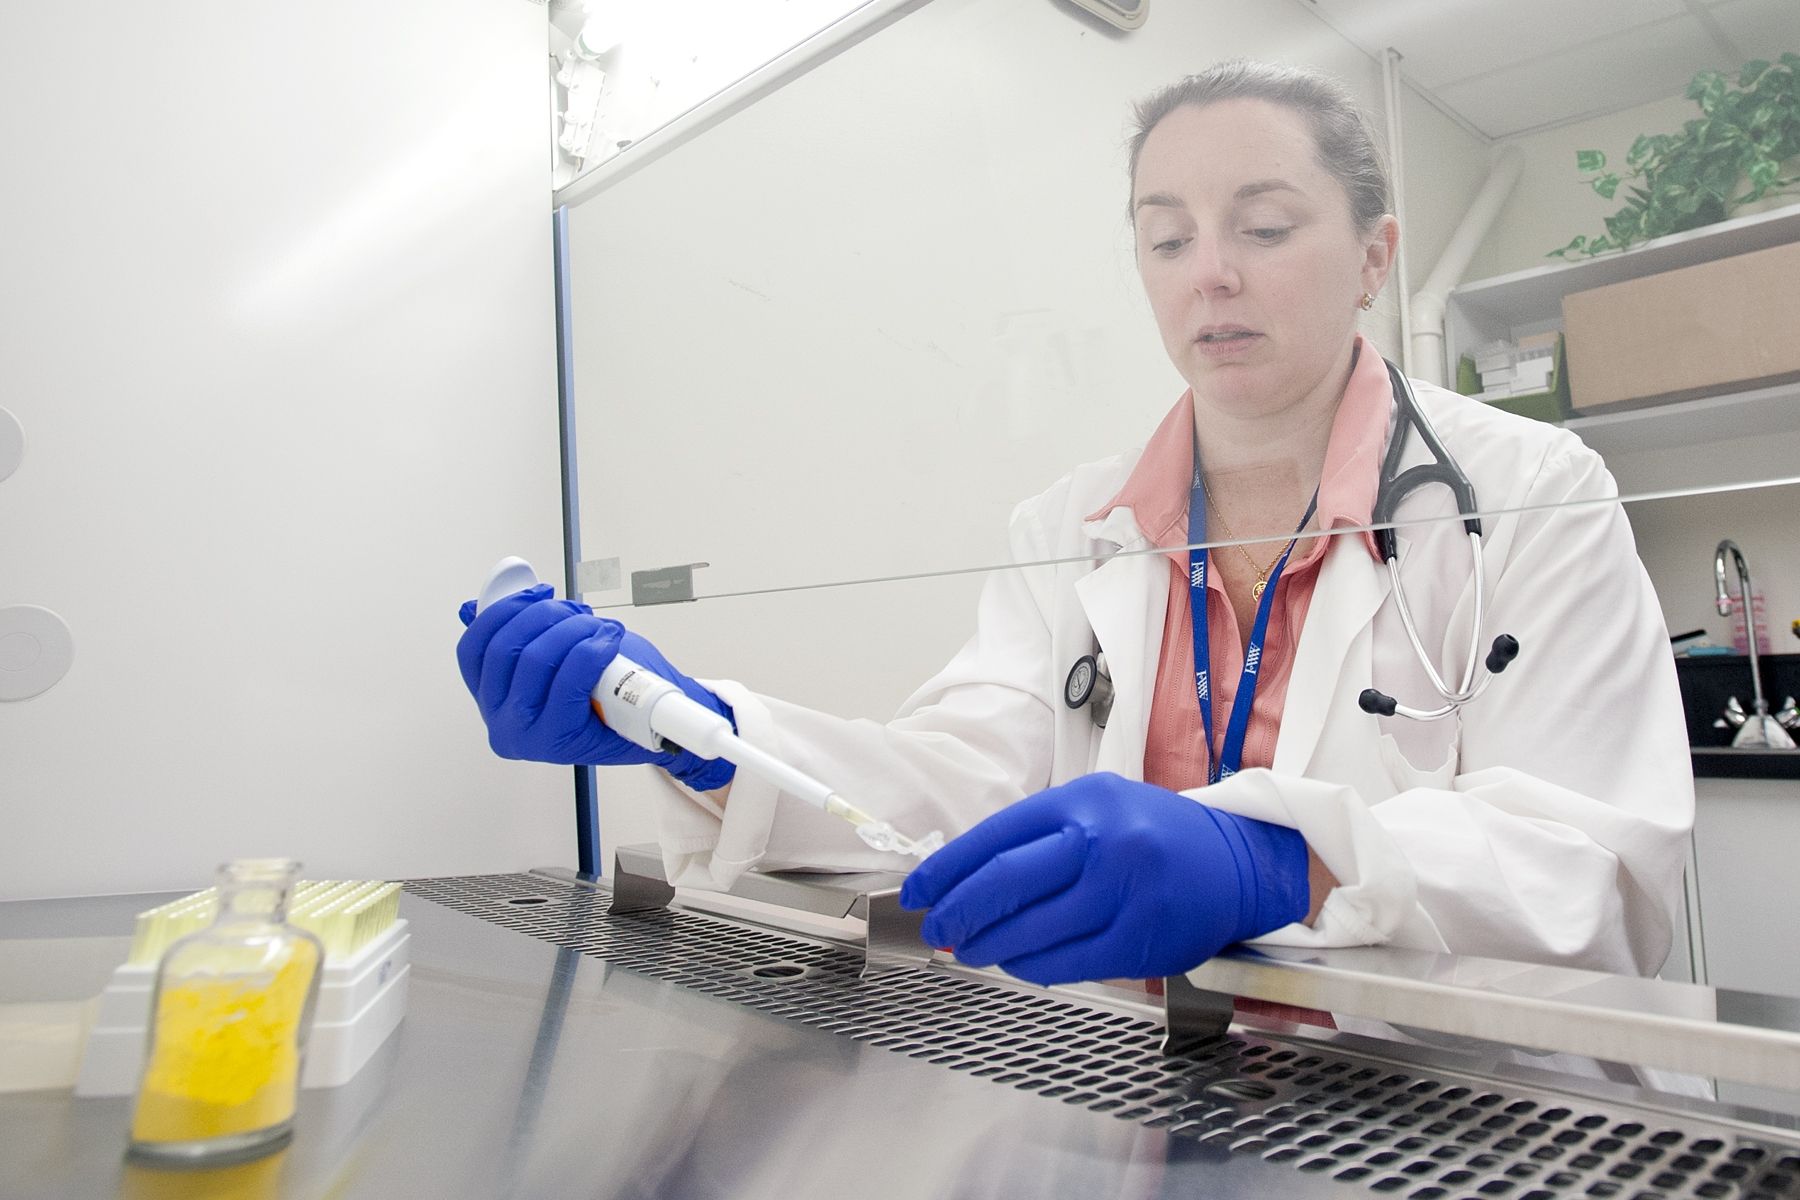 Clinical trials at KGH test cutting-edge treatments